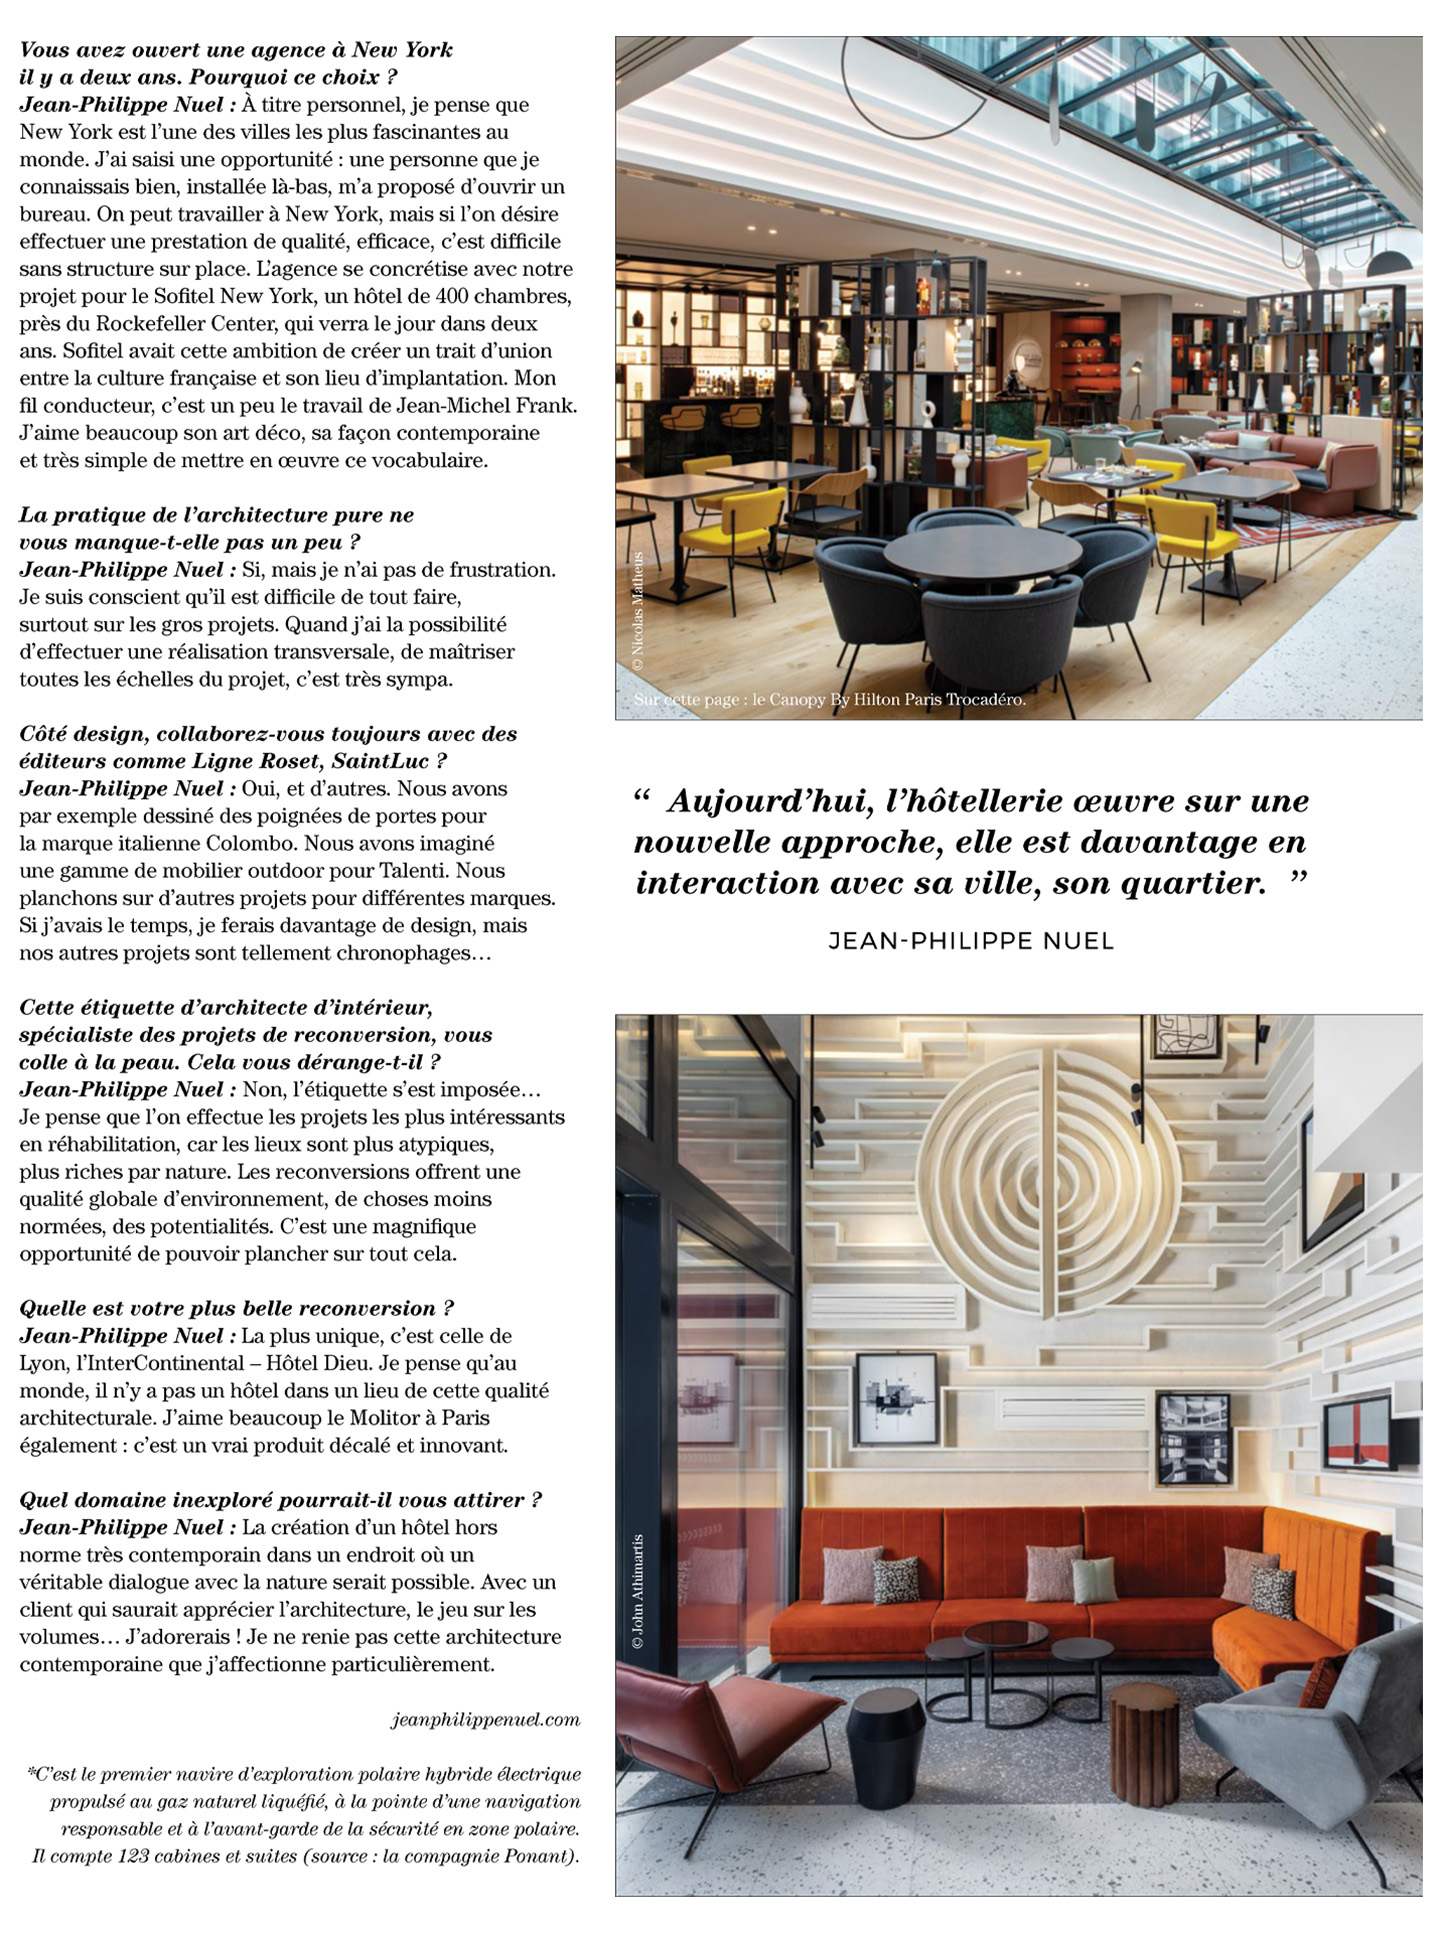 article sur jean-philippe nuel et son agence 'architecture d'intérieur dans le magazine artravel